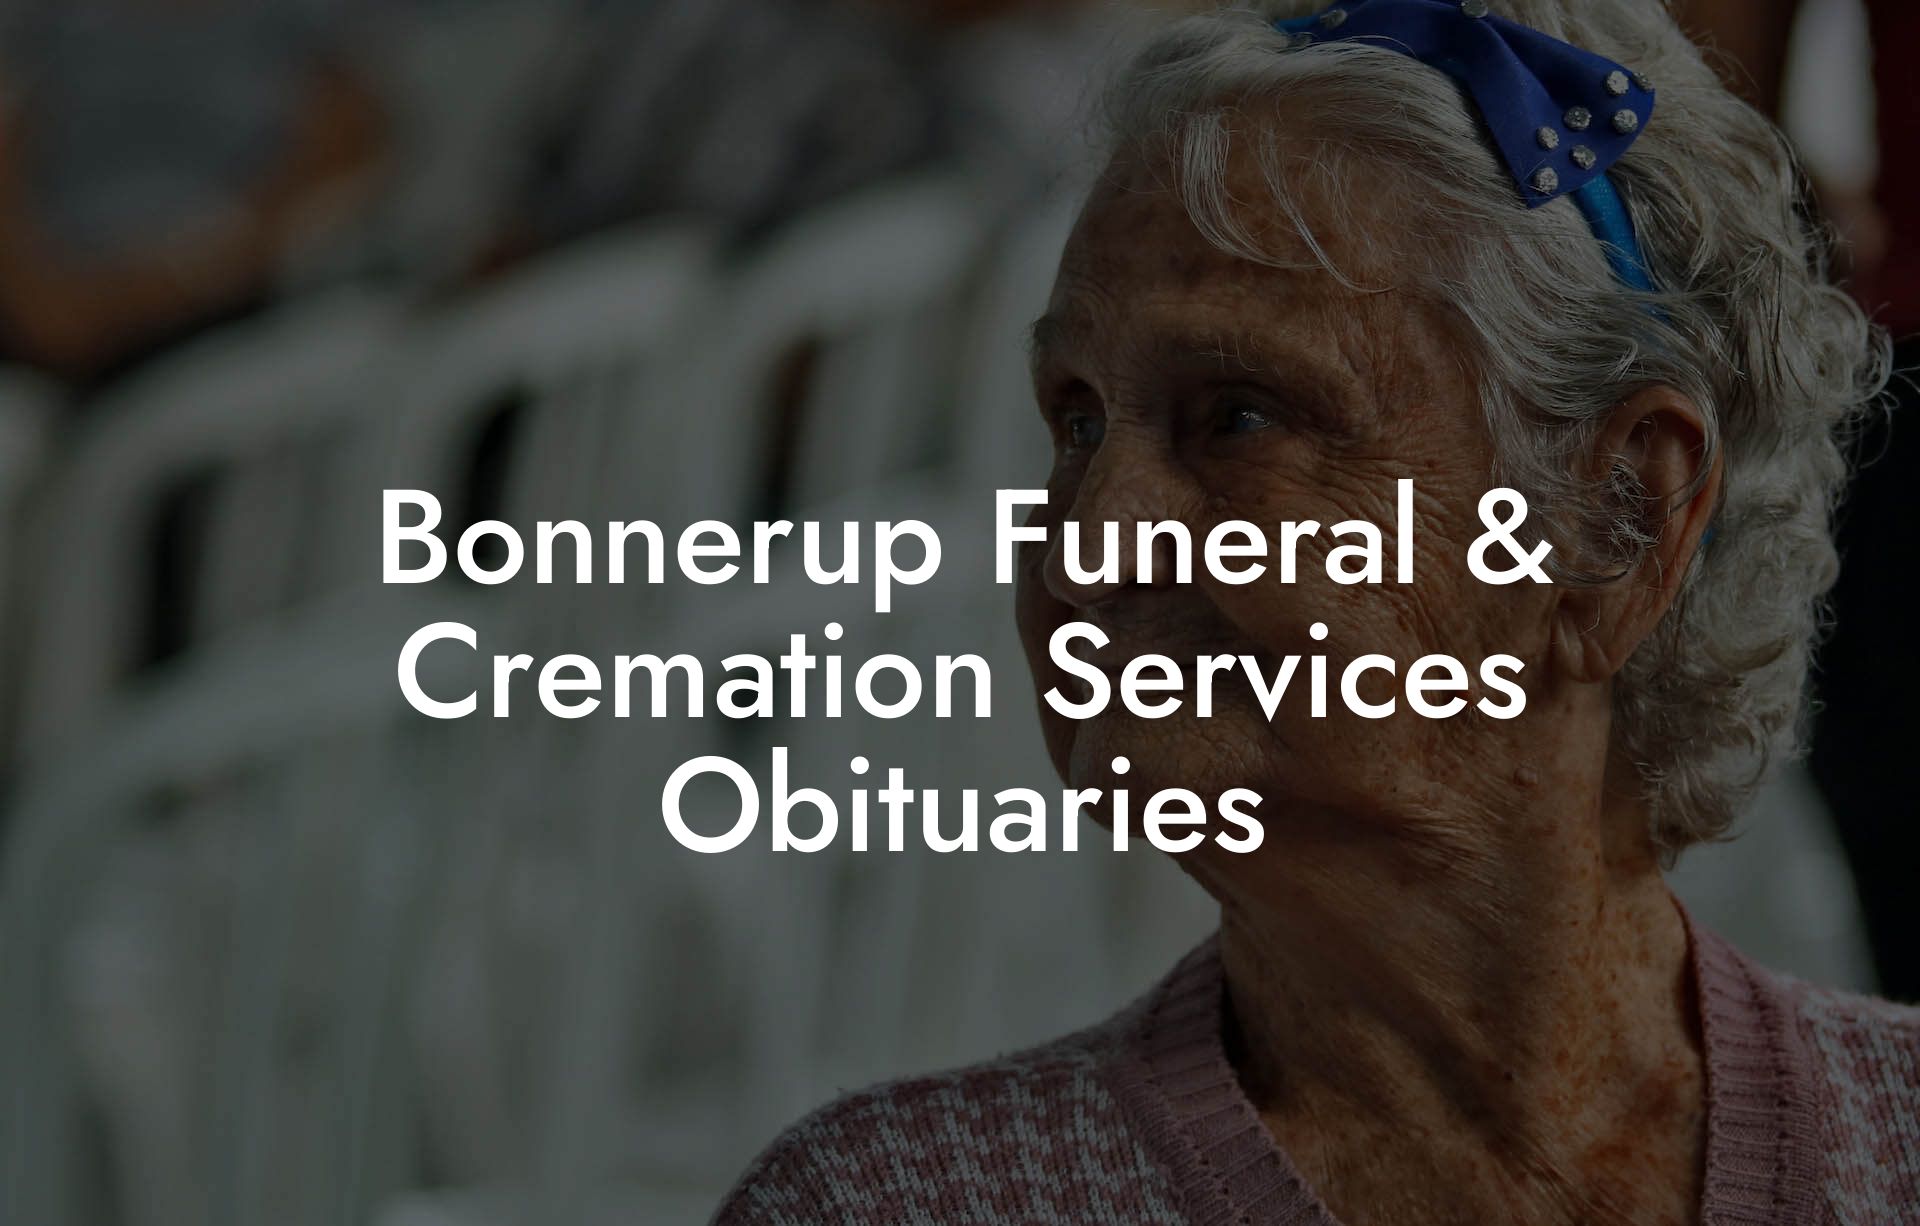 Bonnerup Funeral & Cremation Services Obituaries